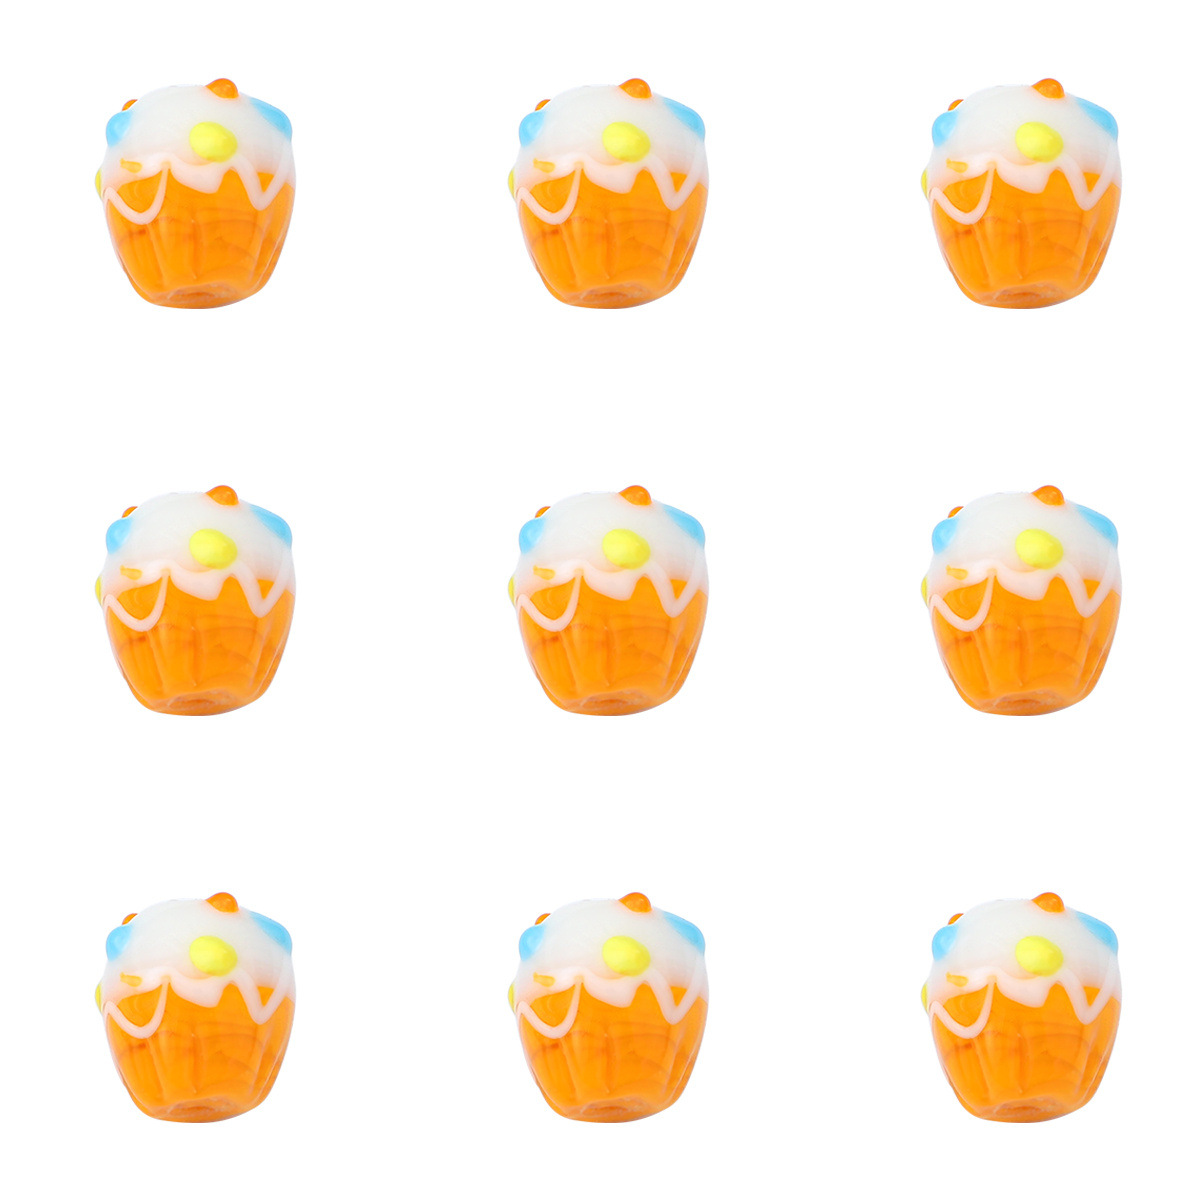 6:البرتقال العميق